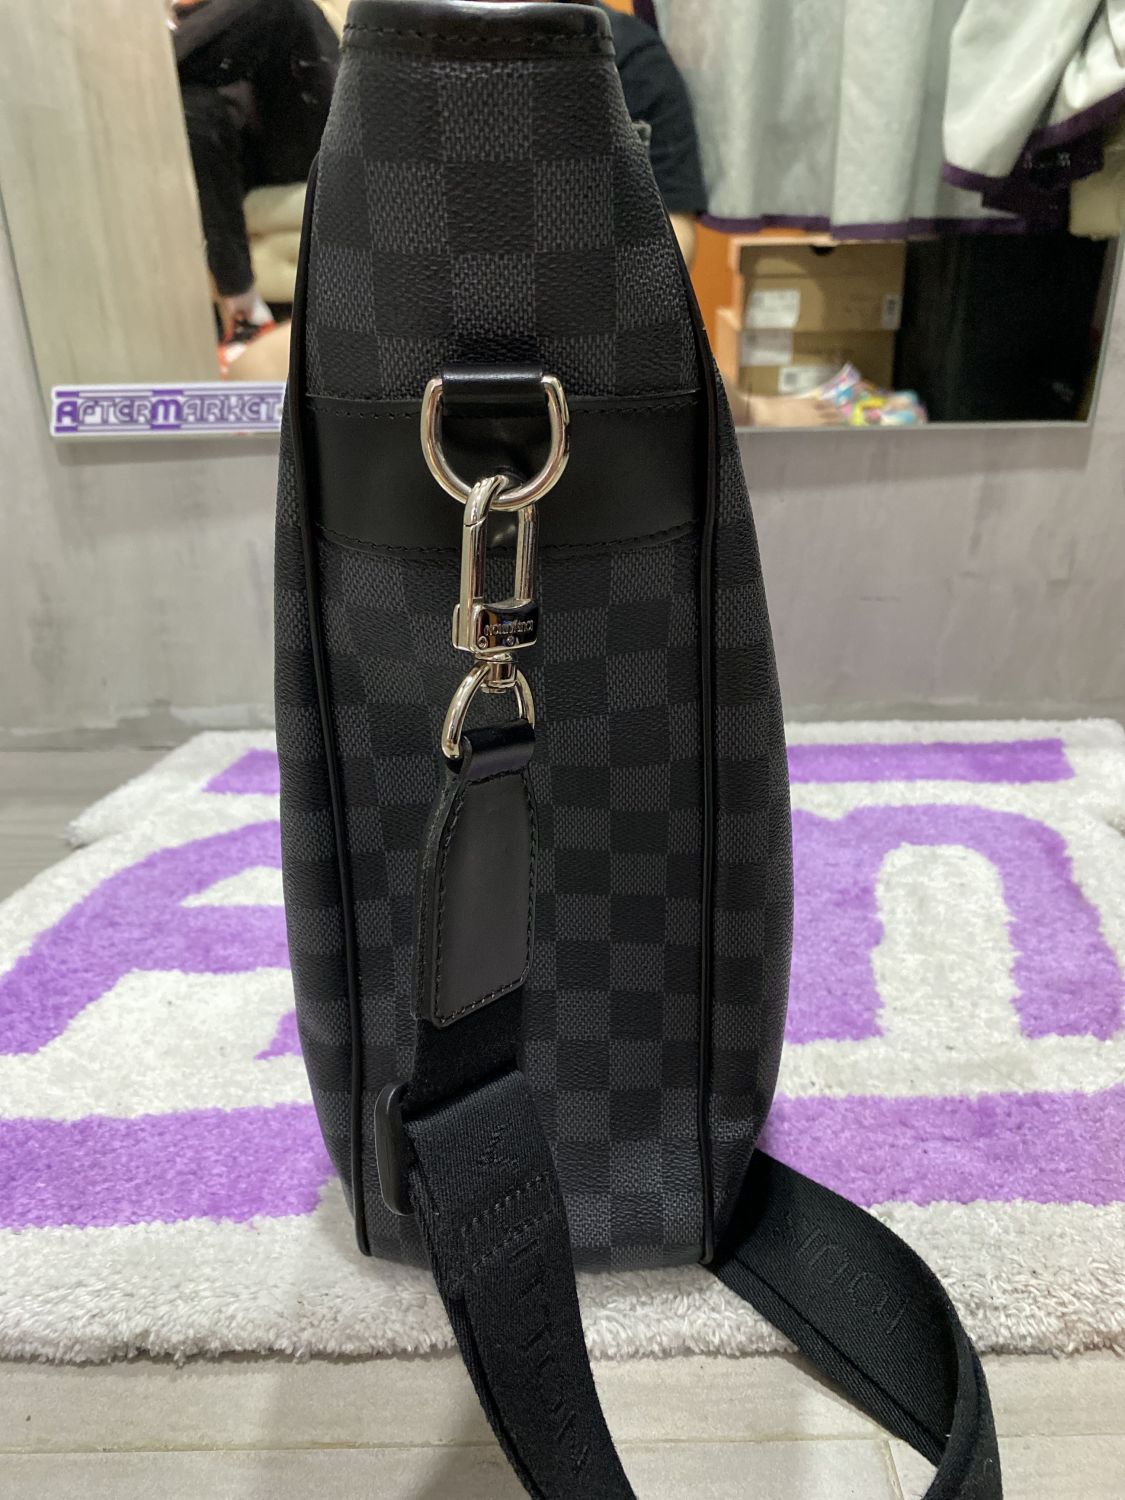 Tadao cloth bag Louis Vuitton Black in Cloth - 29574404